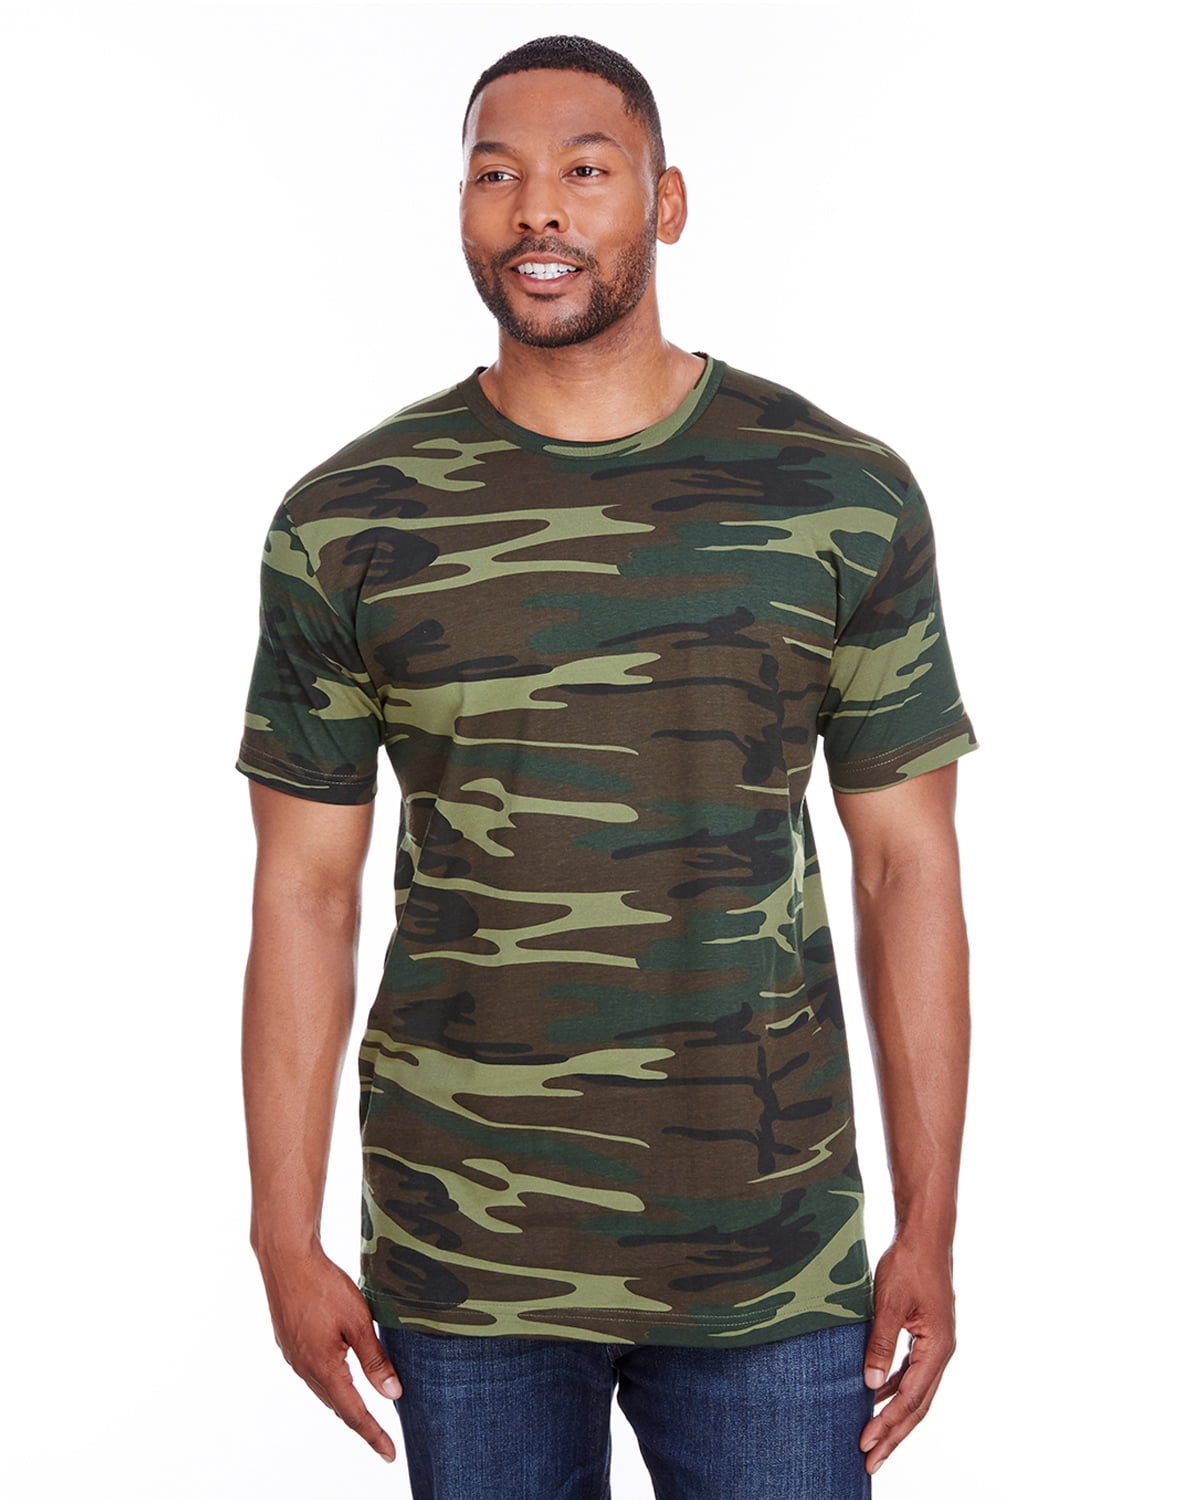 Men's Camo T-Shirt - Walmart.com